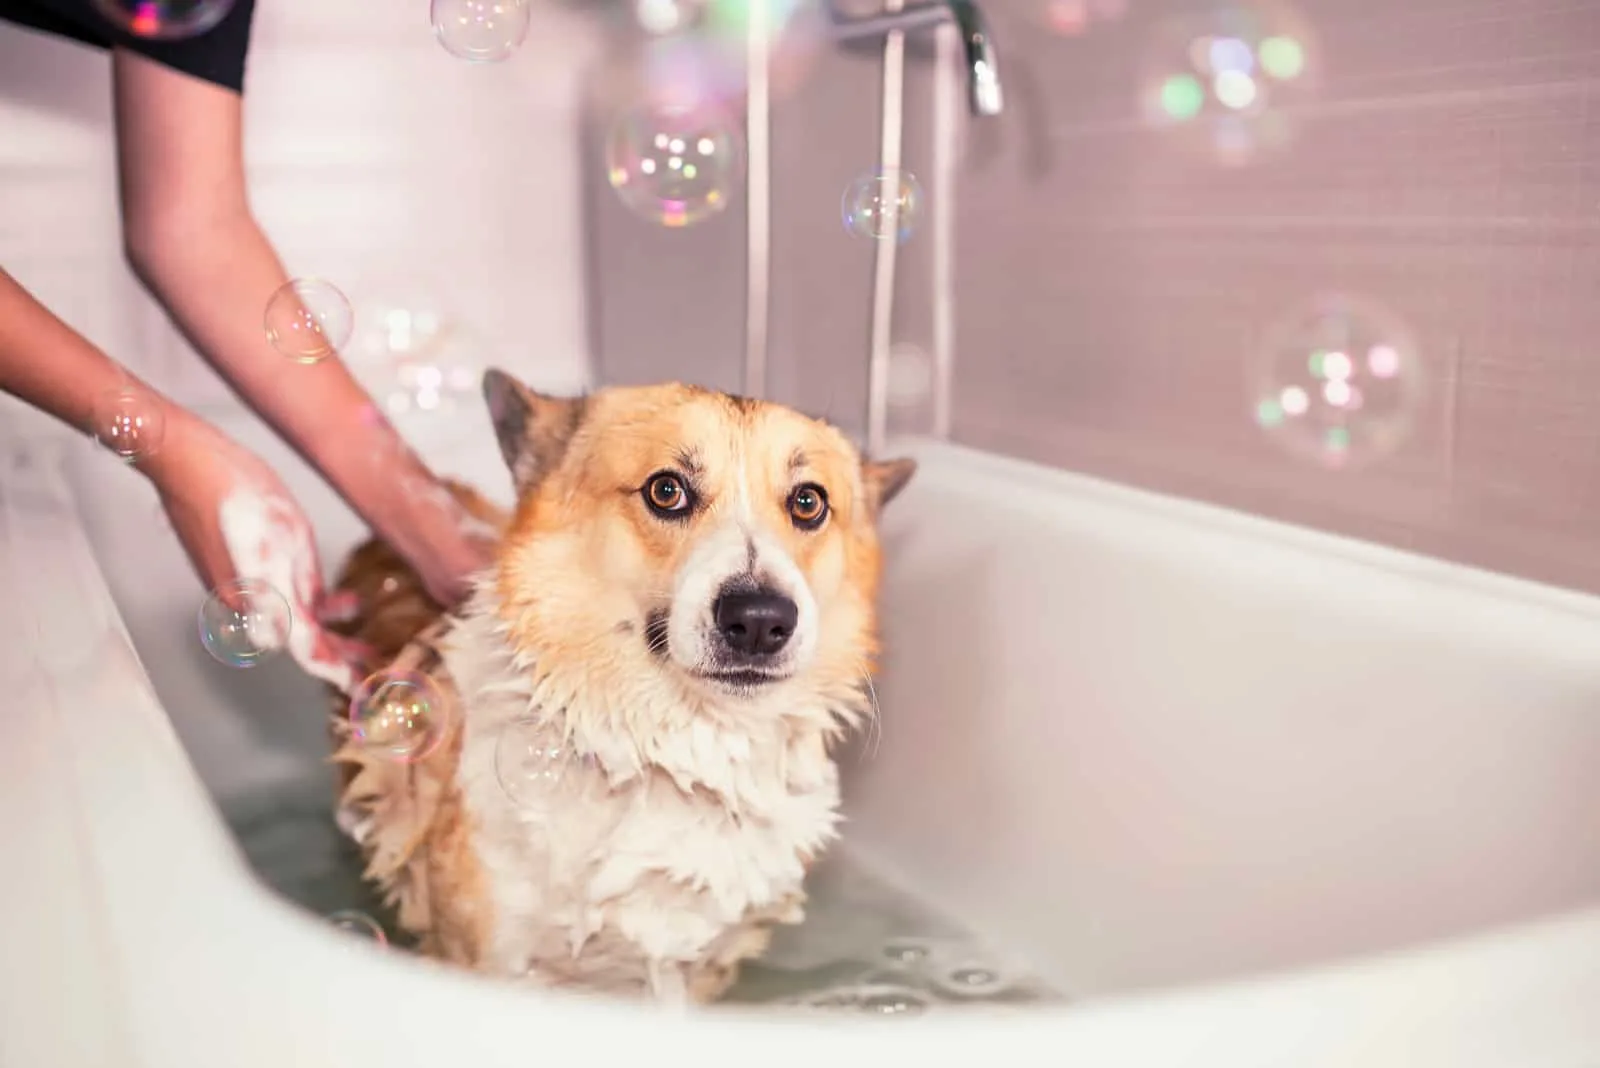 woman bathes dog in bathtub